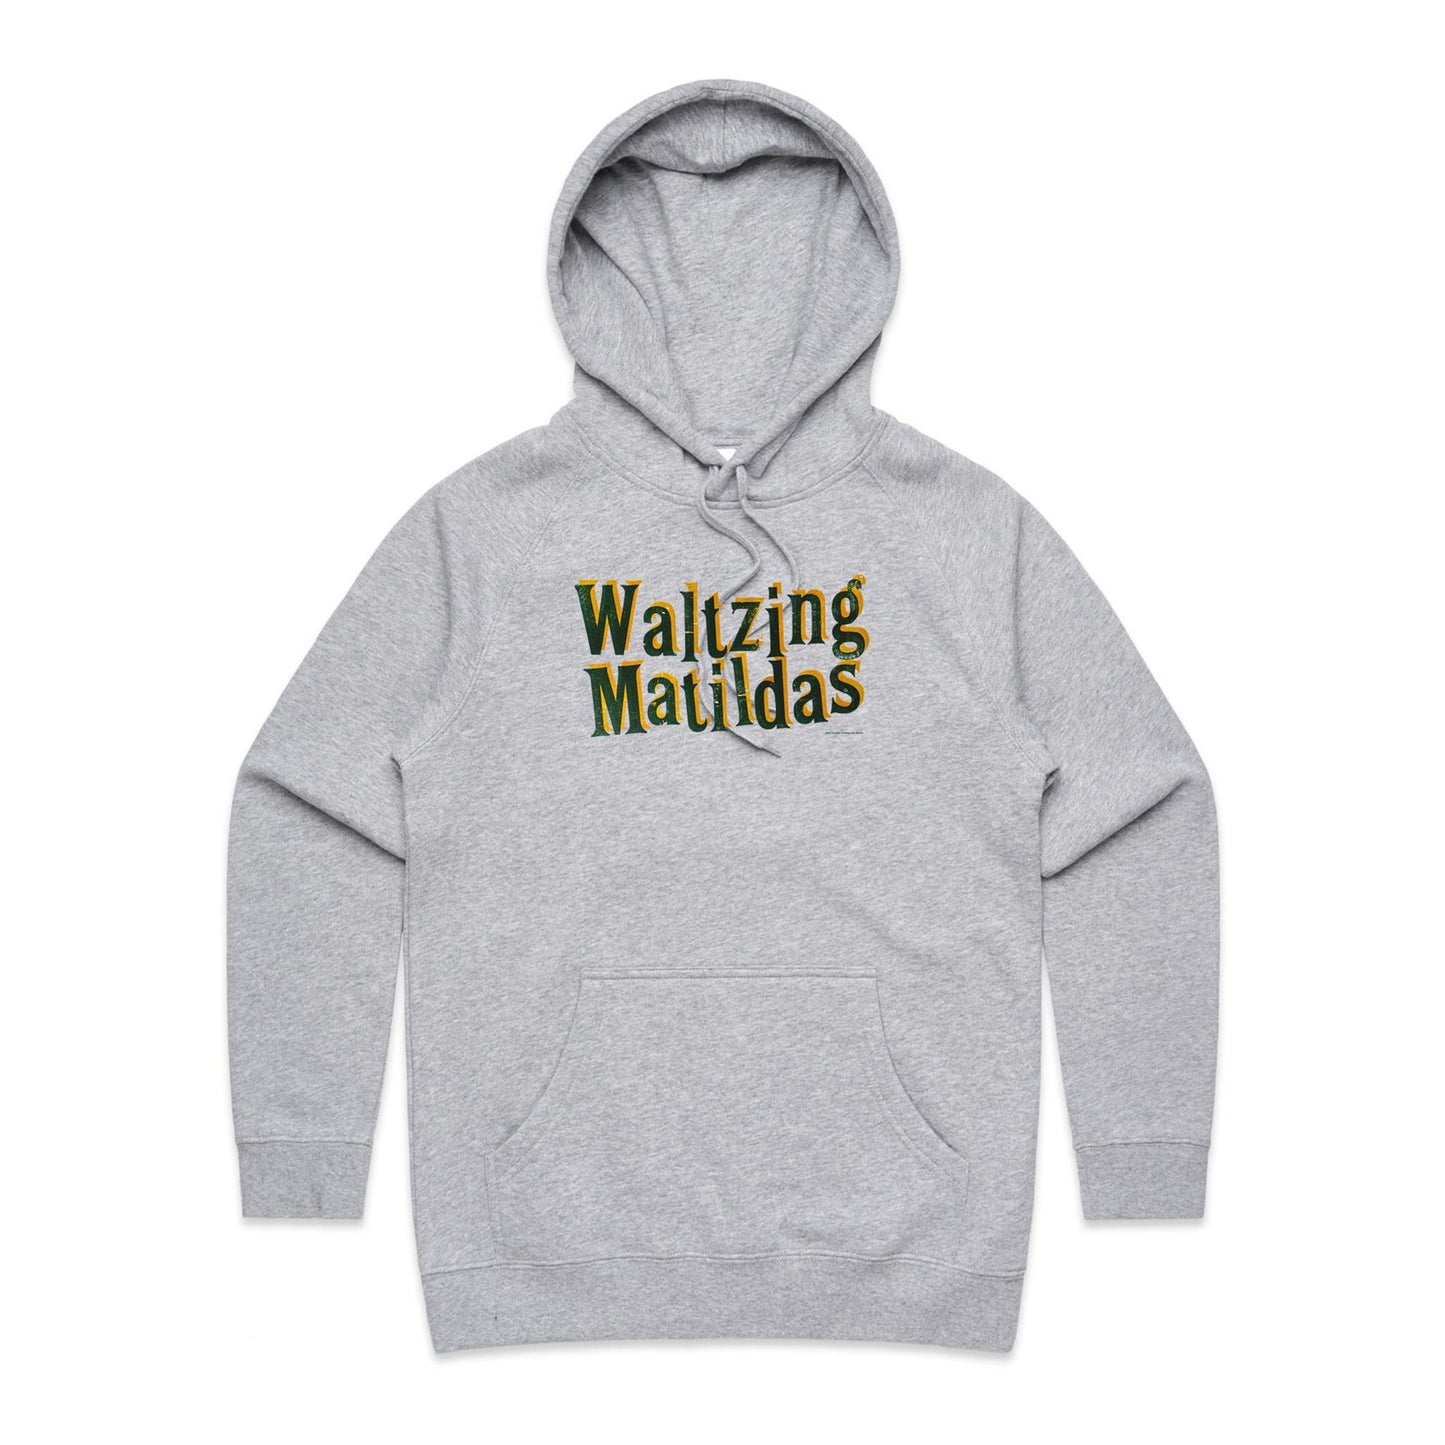 Waltzing Matildas Hoodies for Women